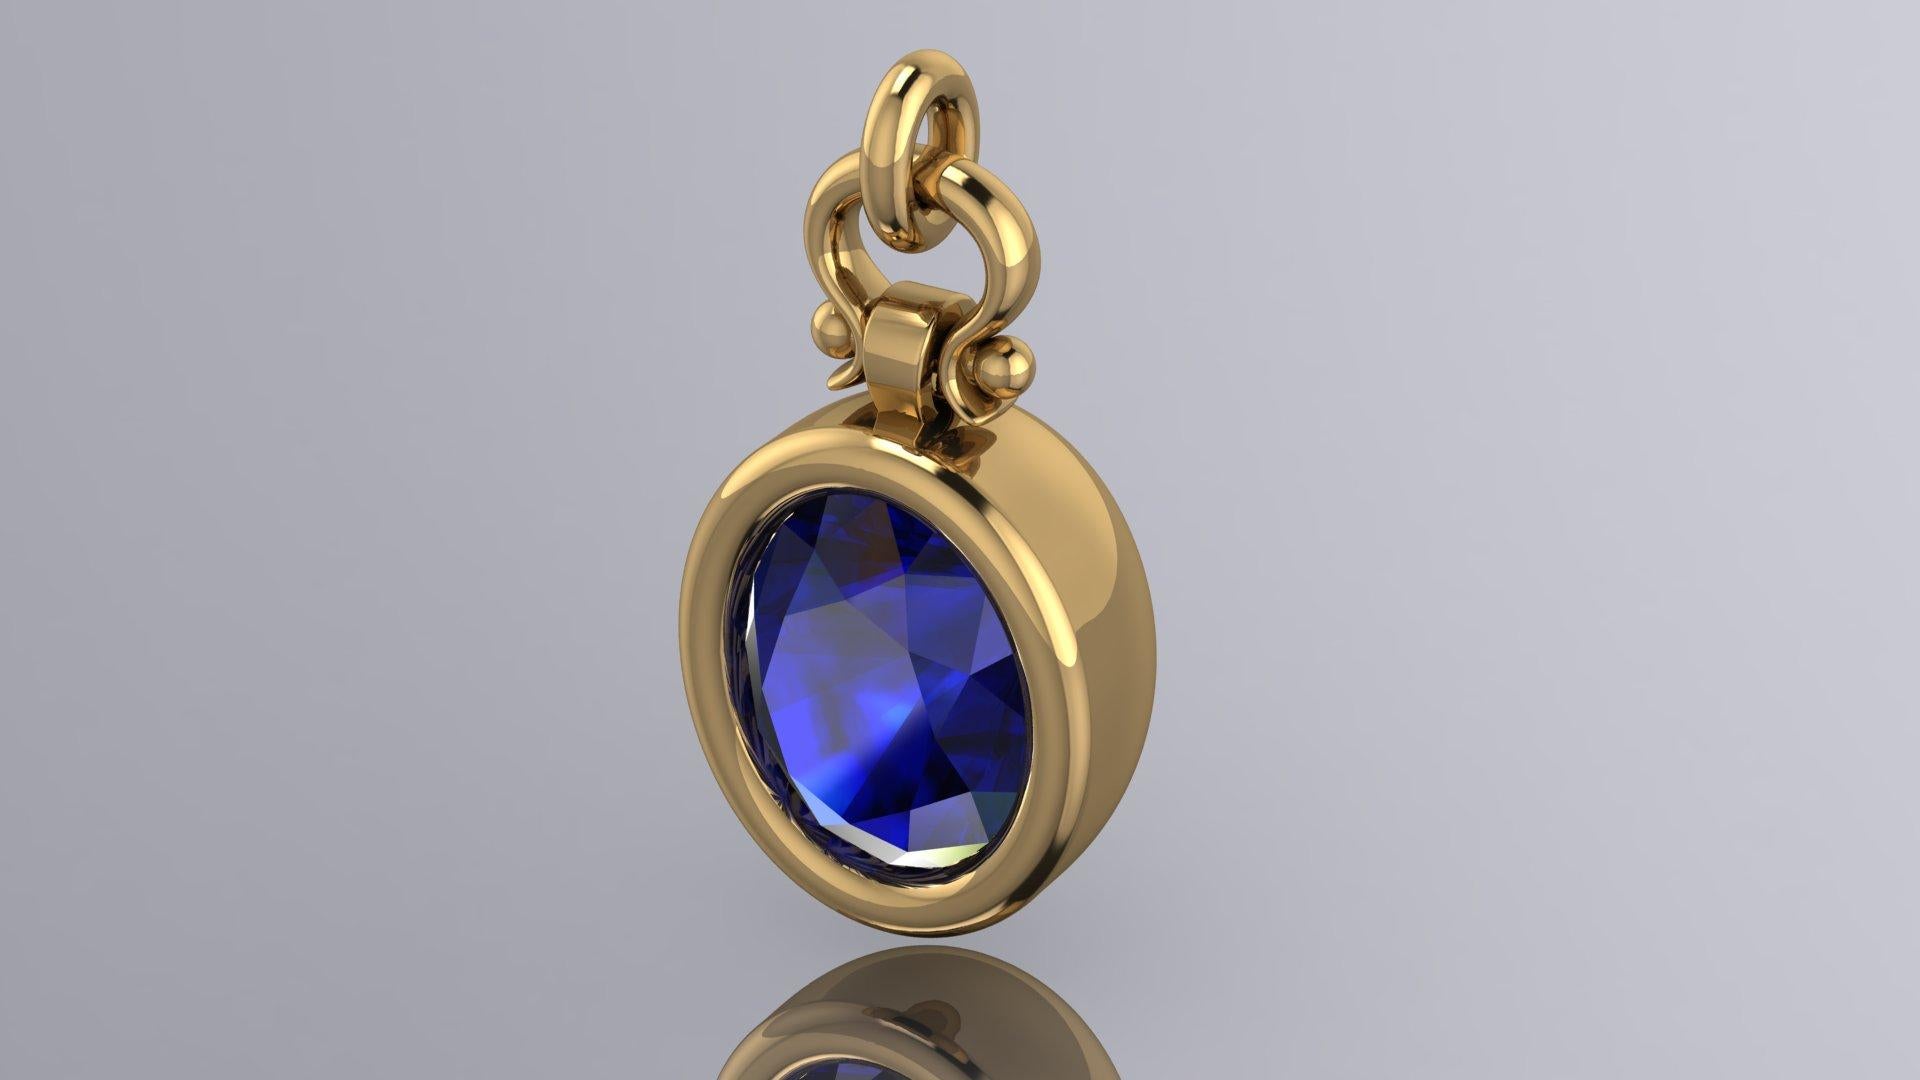 Oval Cut Berberyn Certified 4.66 Carat Oval Blue Sapphire Custom Pendant Necklace in 18k For Sale